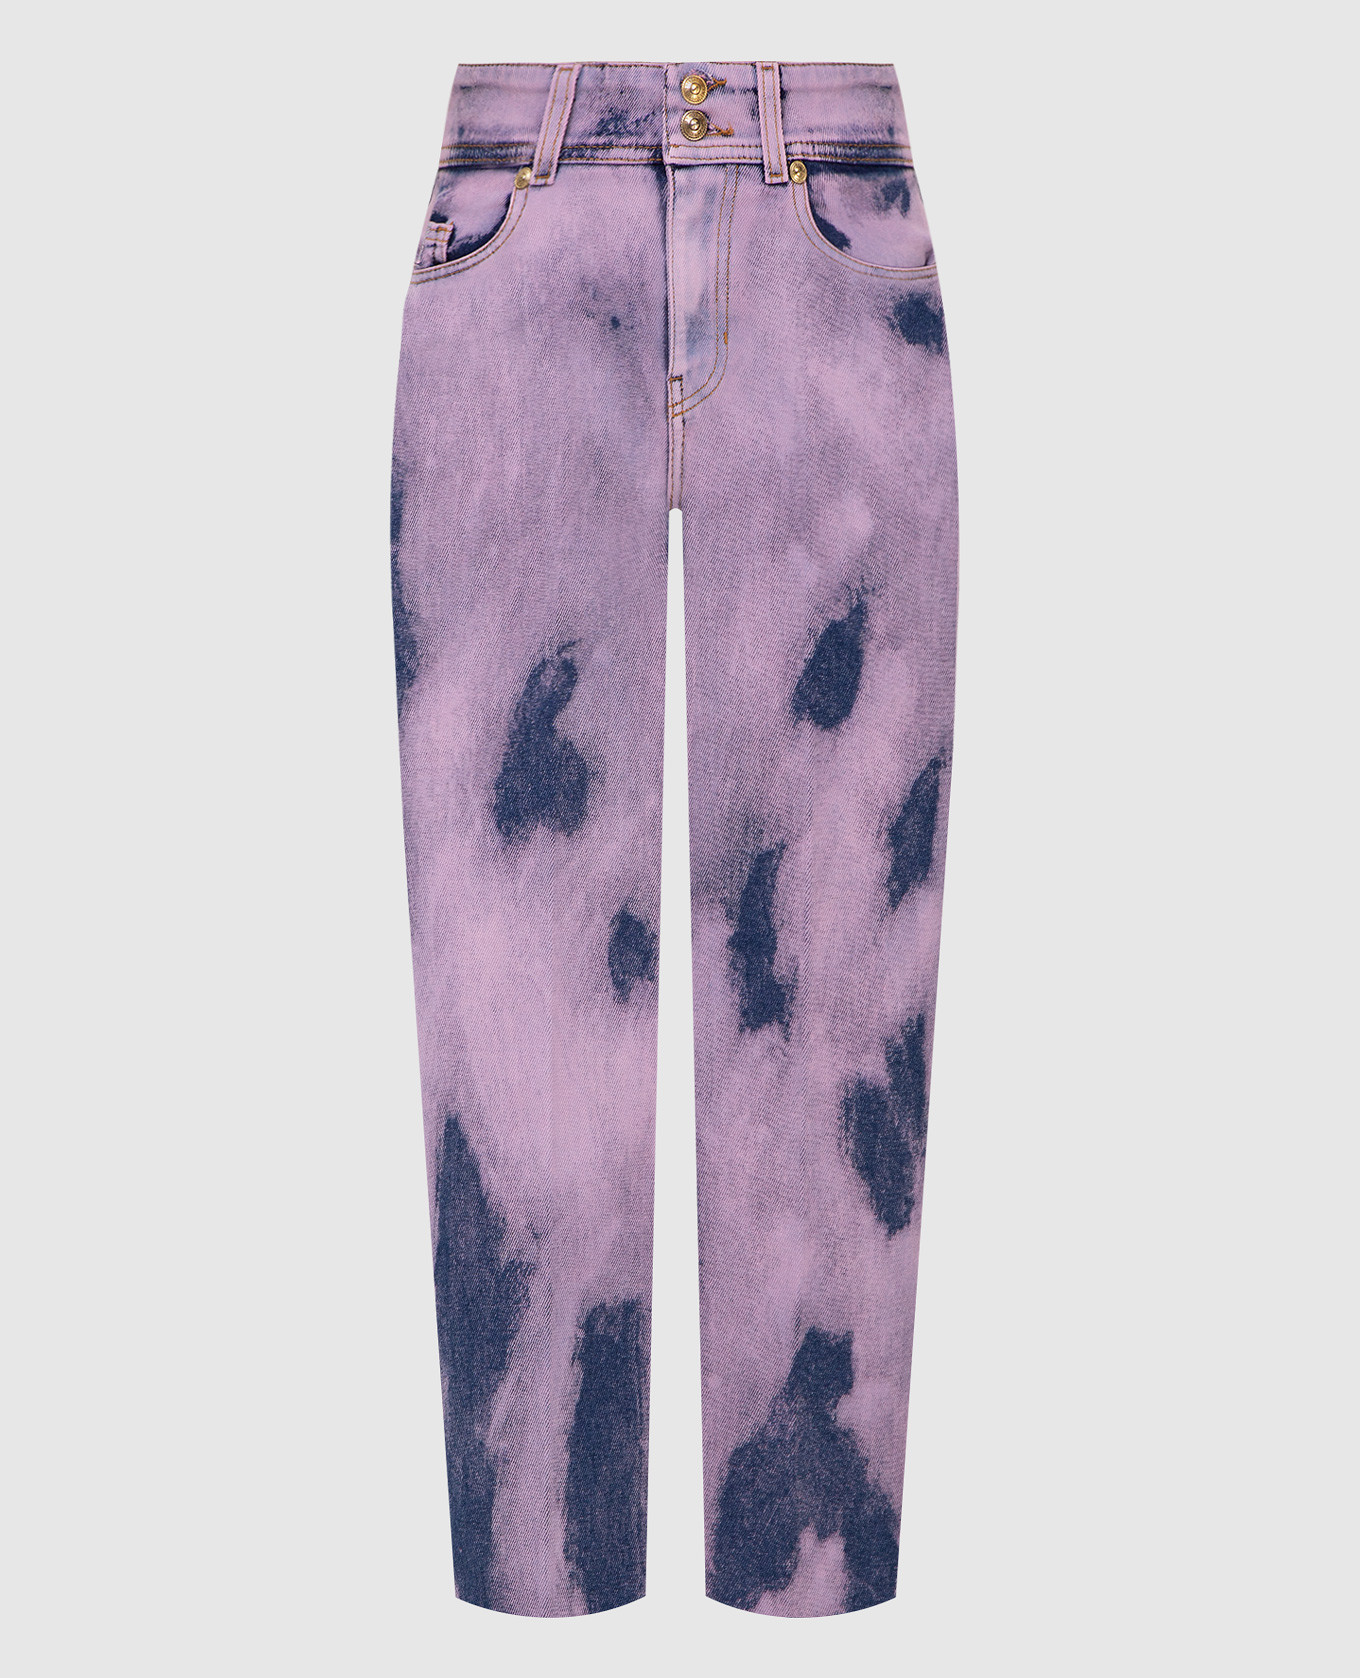 Lilac tie-dye jeans